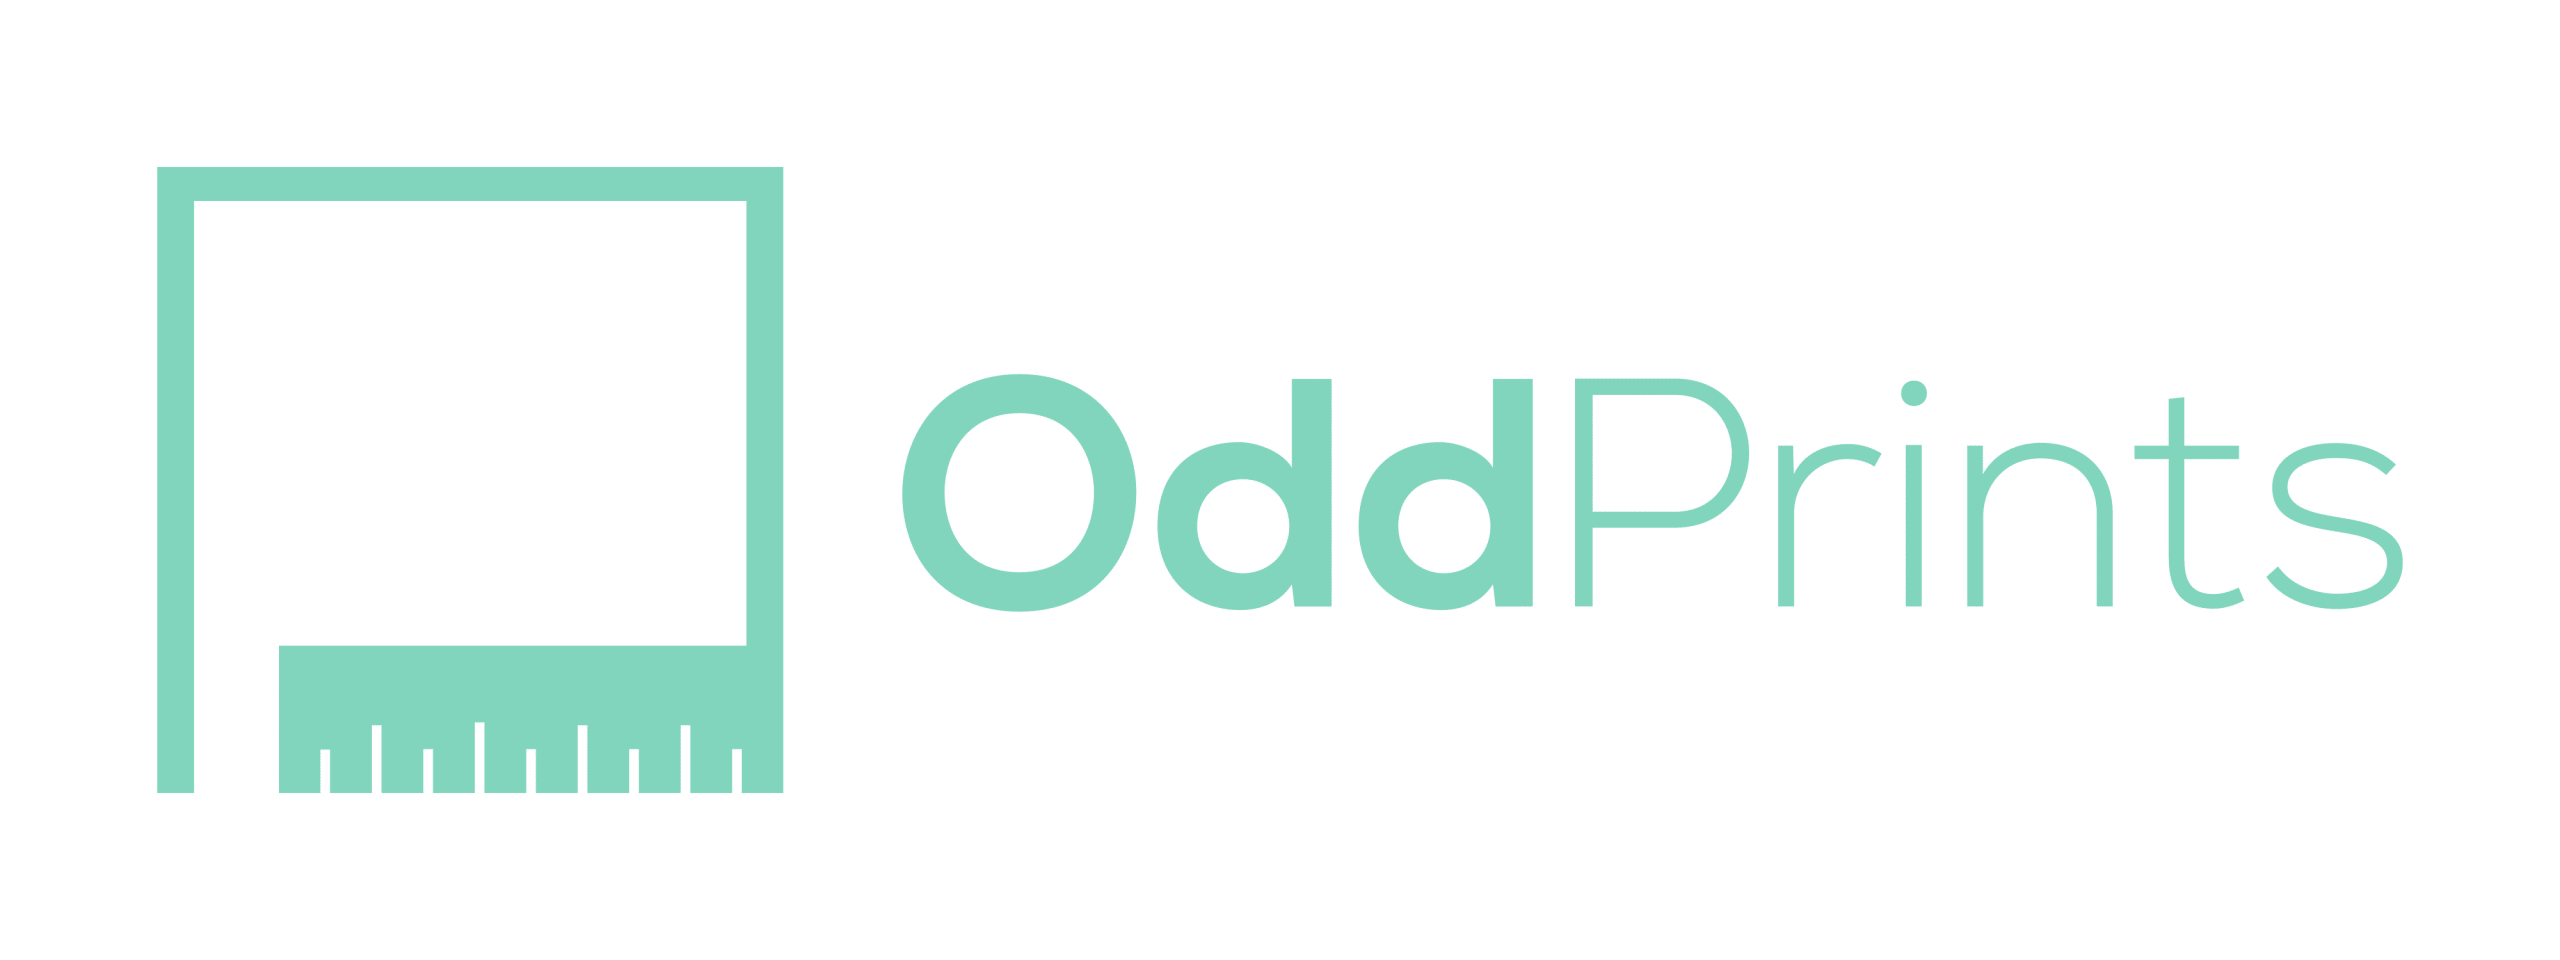 Logotipo de Oddprints